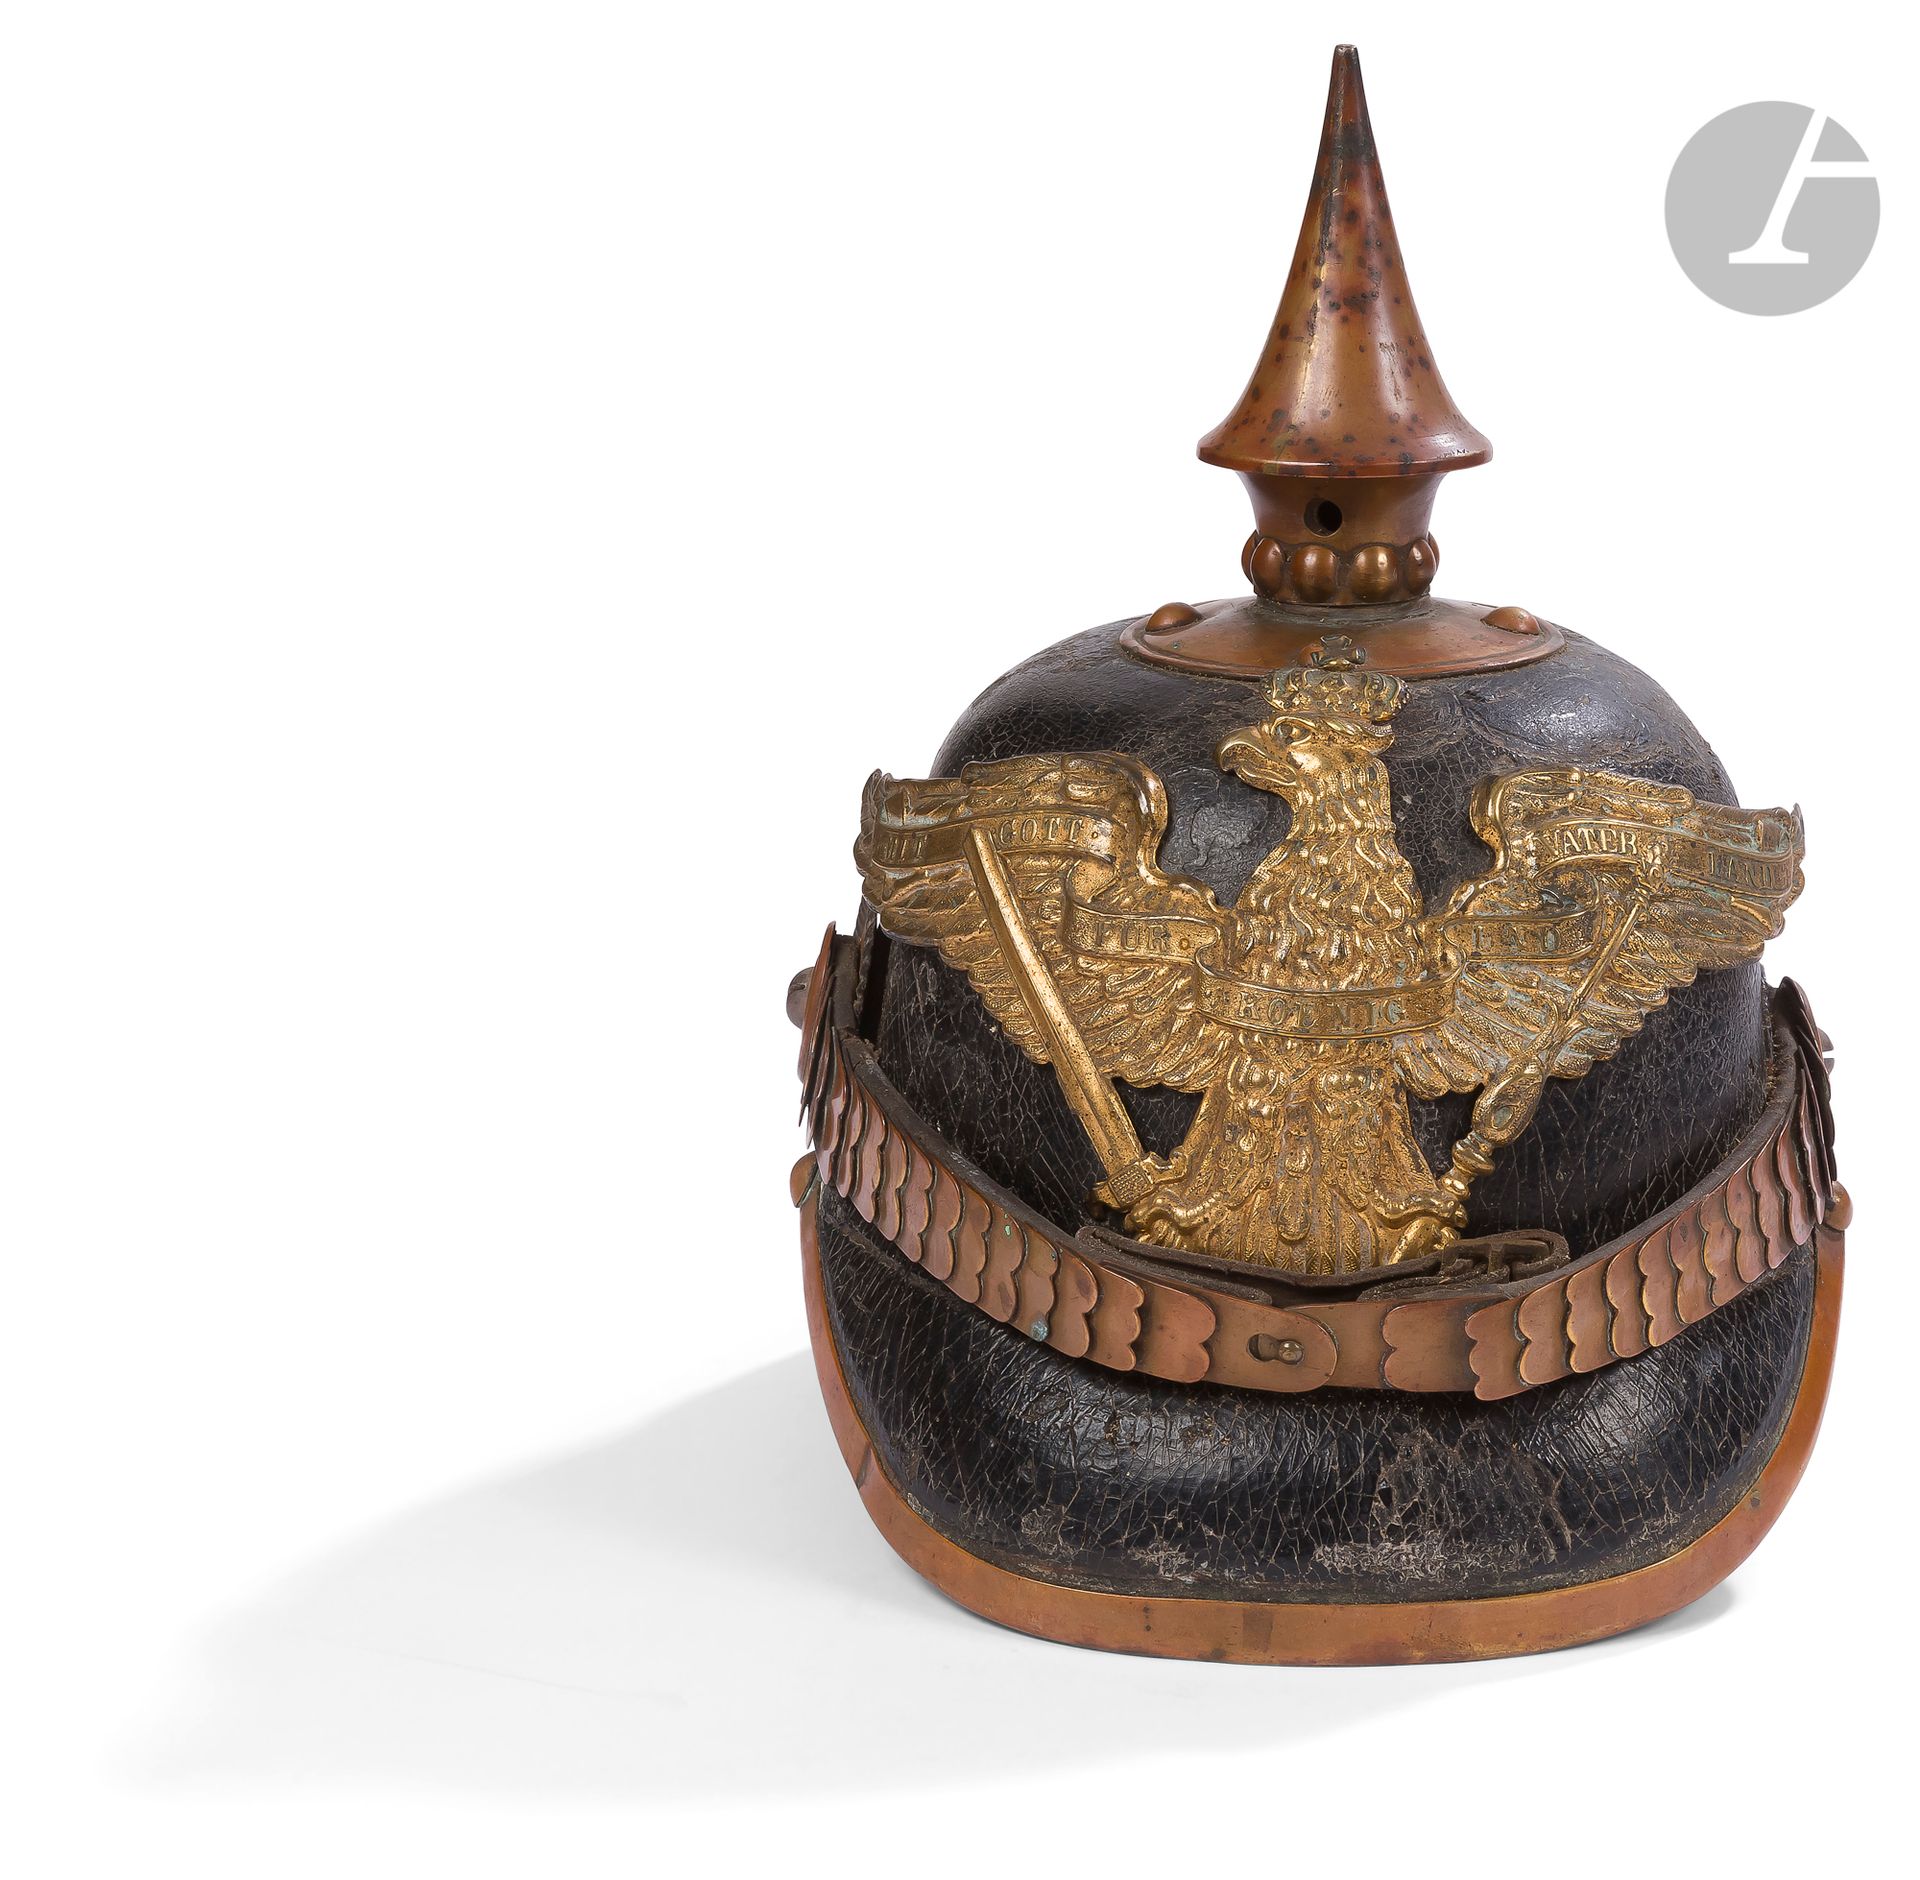 Null Spitzhelm Modell 1867 der preußischen Infanterie.
Bombe aus lackiertem Lede&hellip;